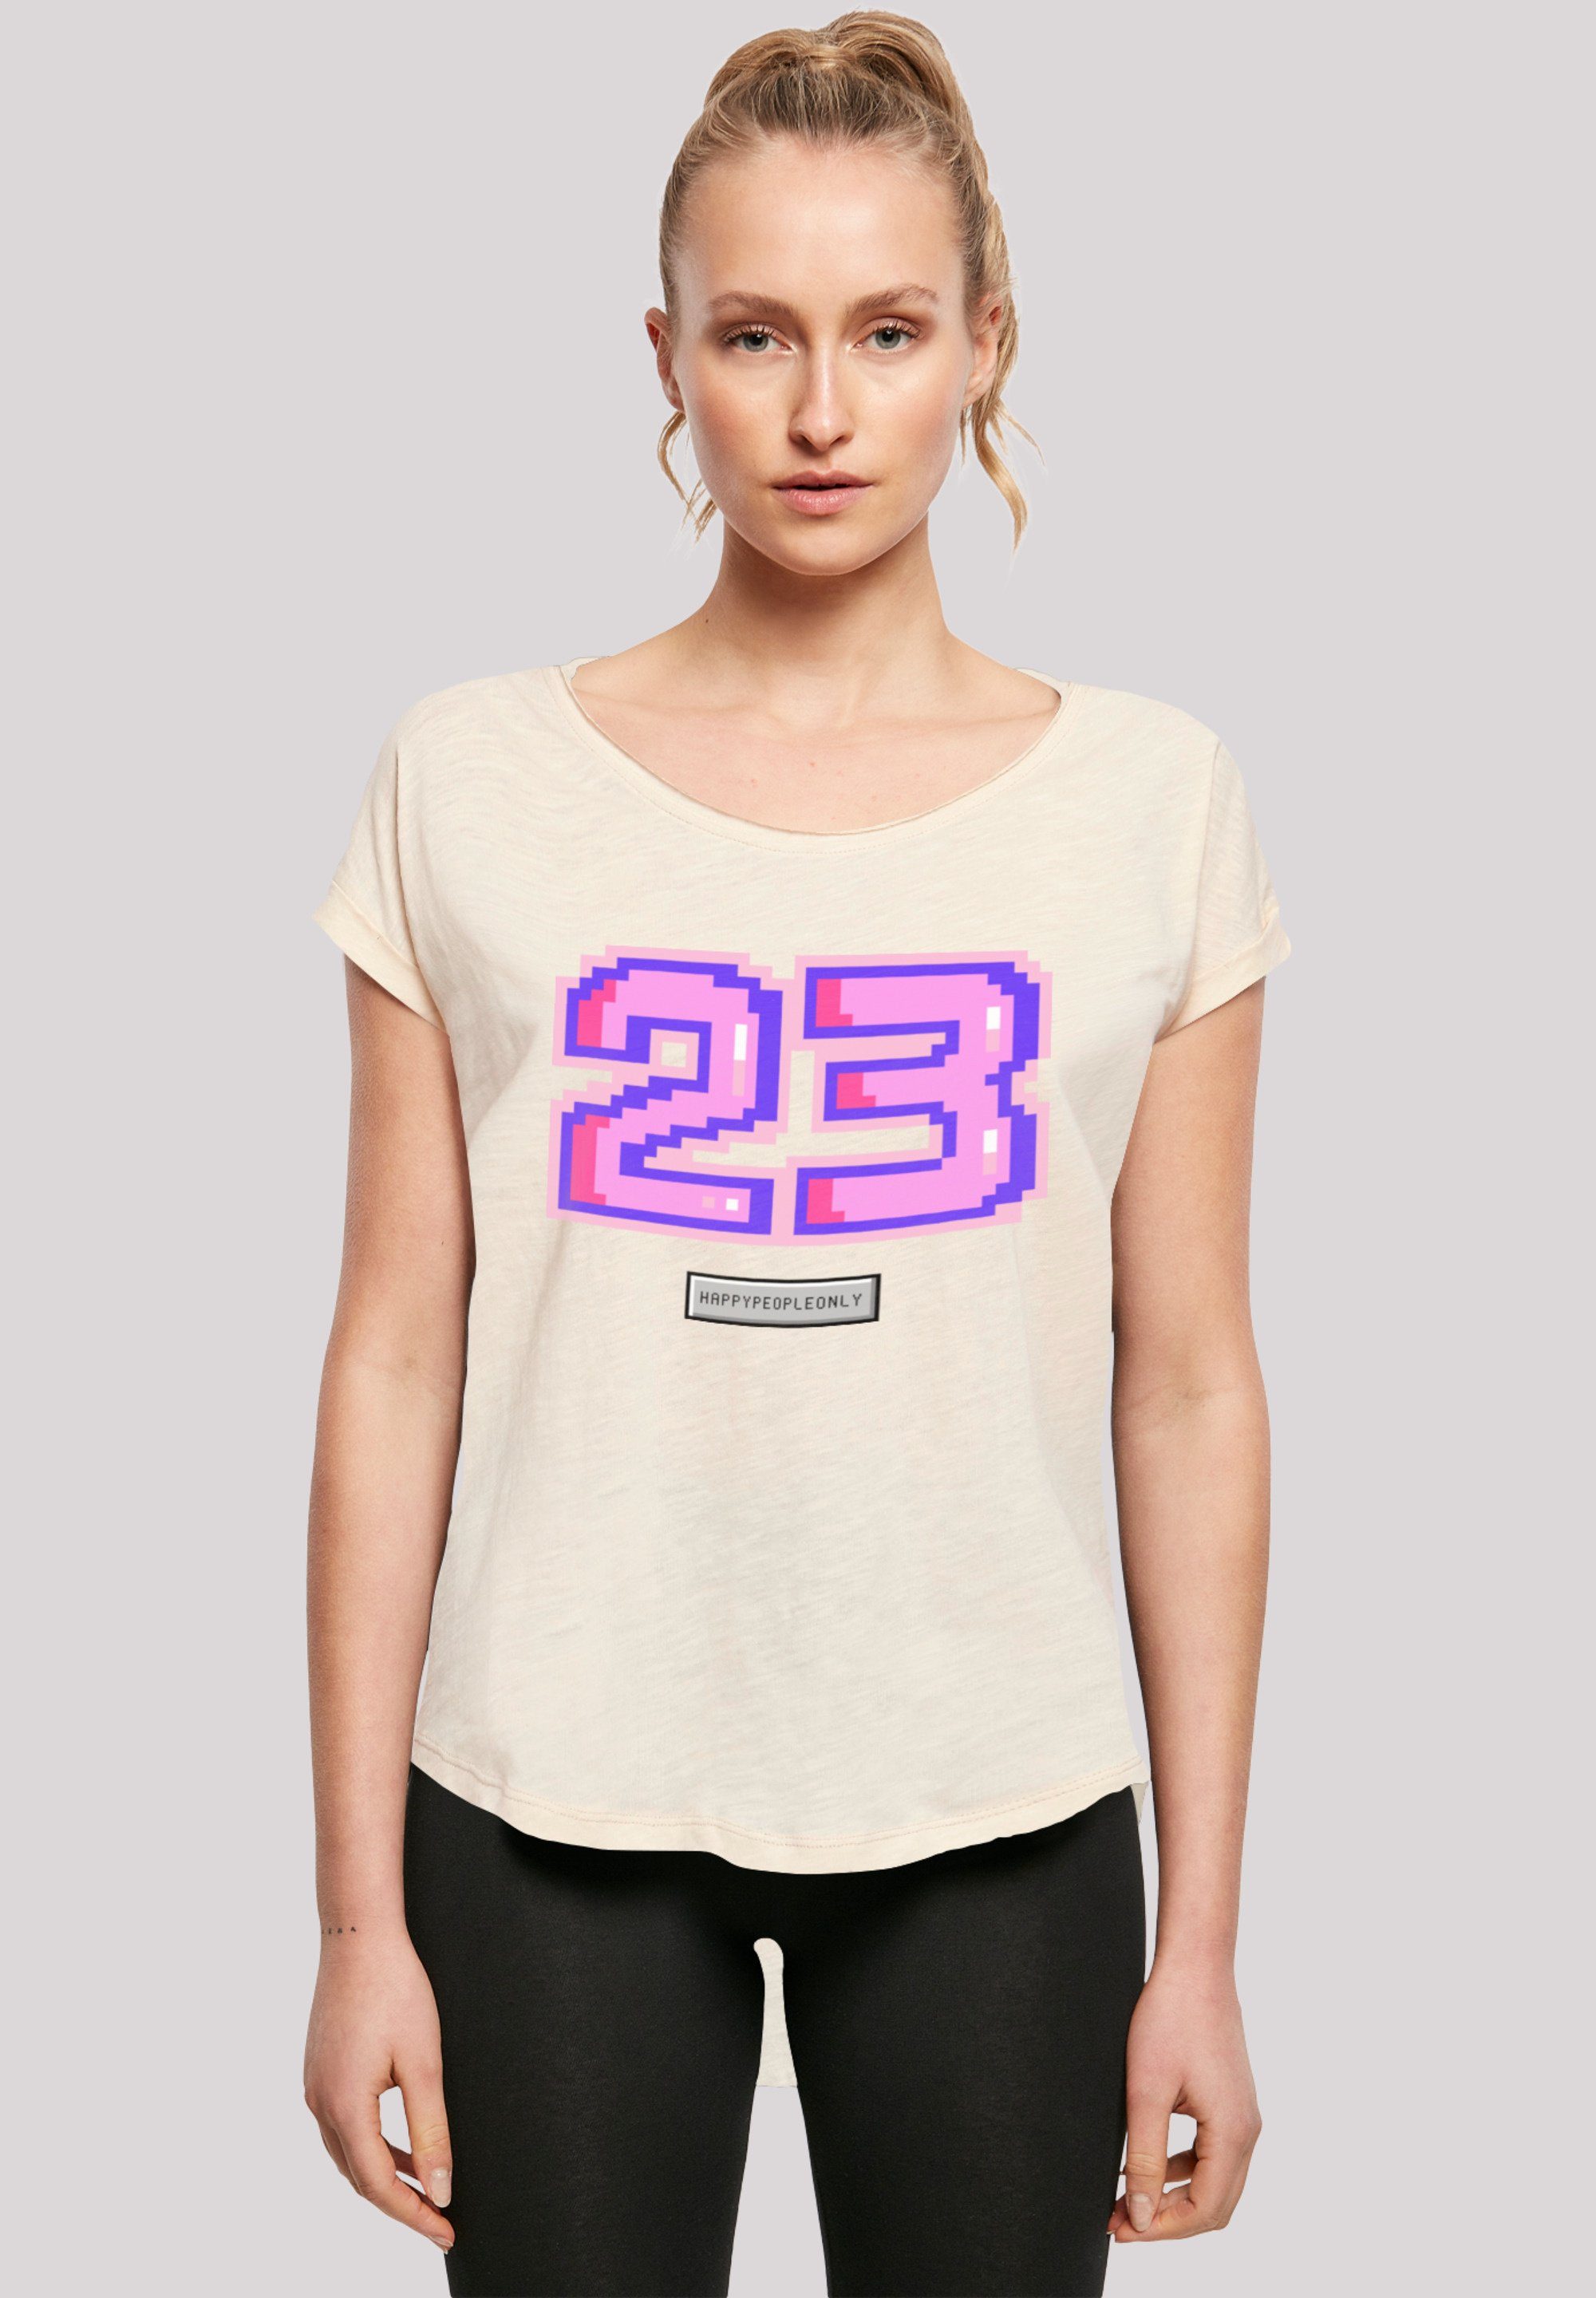 F4NT4STIC T-Shirt Pixel 23 Hinten lang Print, Damen T-Shirt pink geschnittenes extra